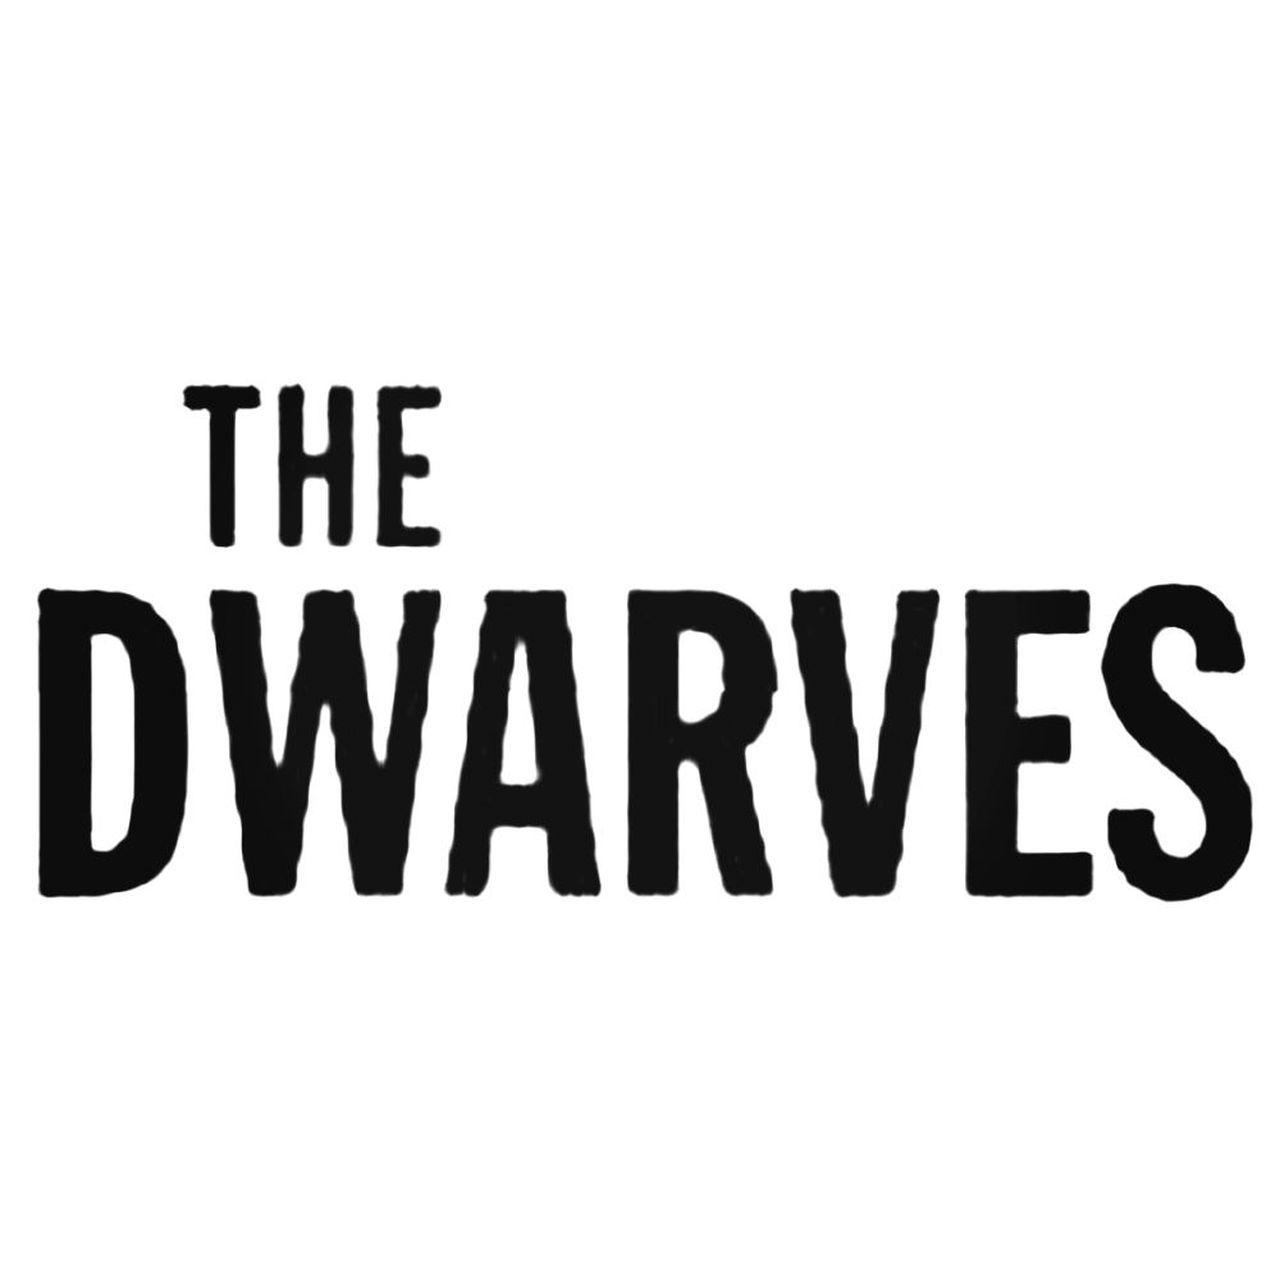 Dwarves Logo - The Dwarves Band Decal Sticker